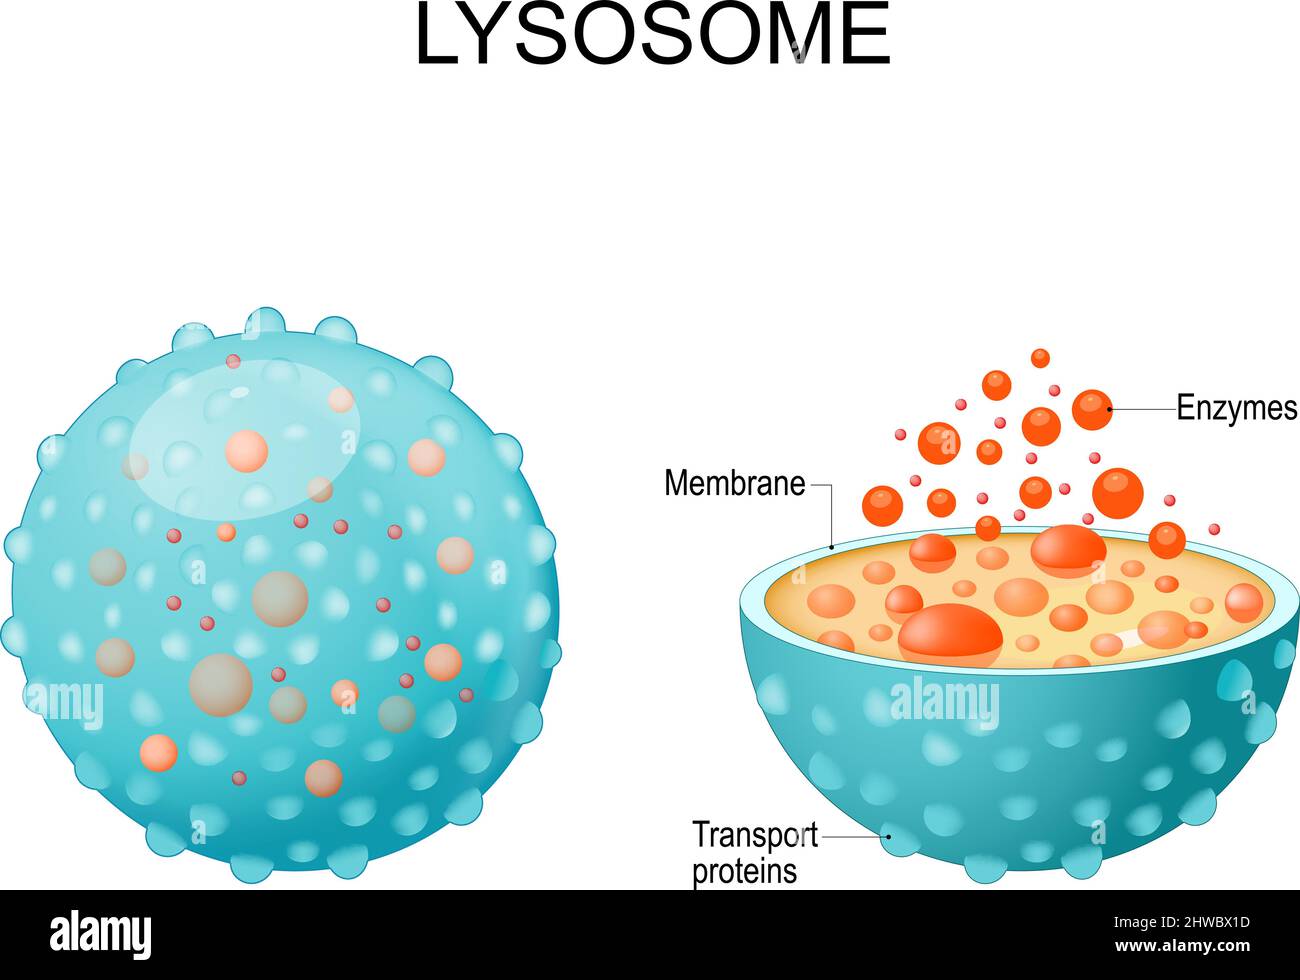 Lysosome. Apparence, vue extérieure et intérieure. Coupe transversale et anatomie du lysosome : enzymes hydrolytiques, protéines membranaires et de transport Illustration de Vecteur